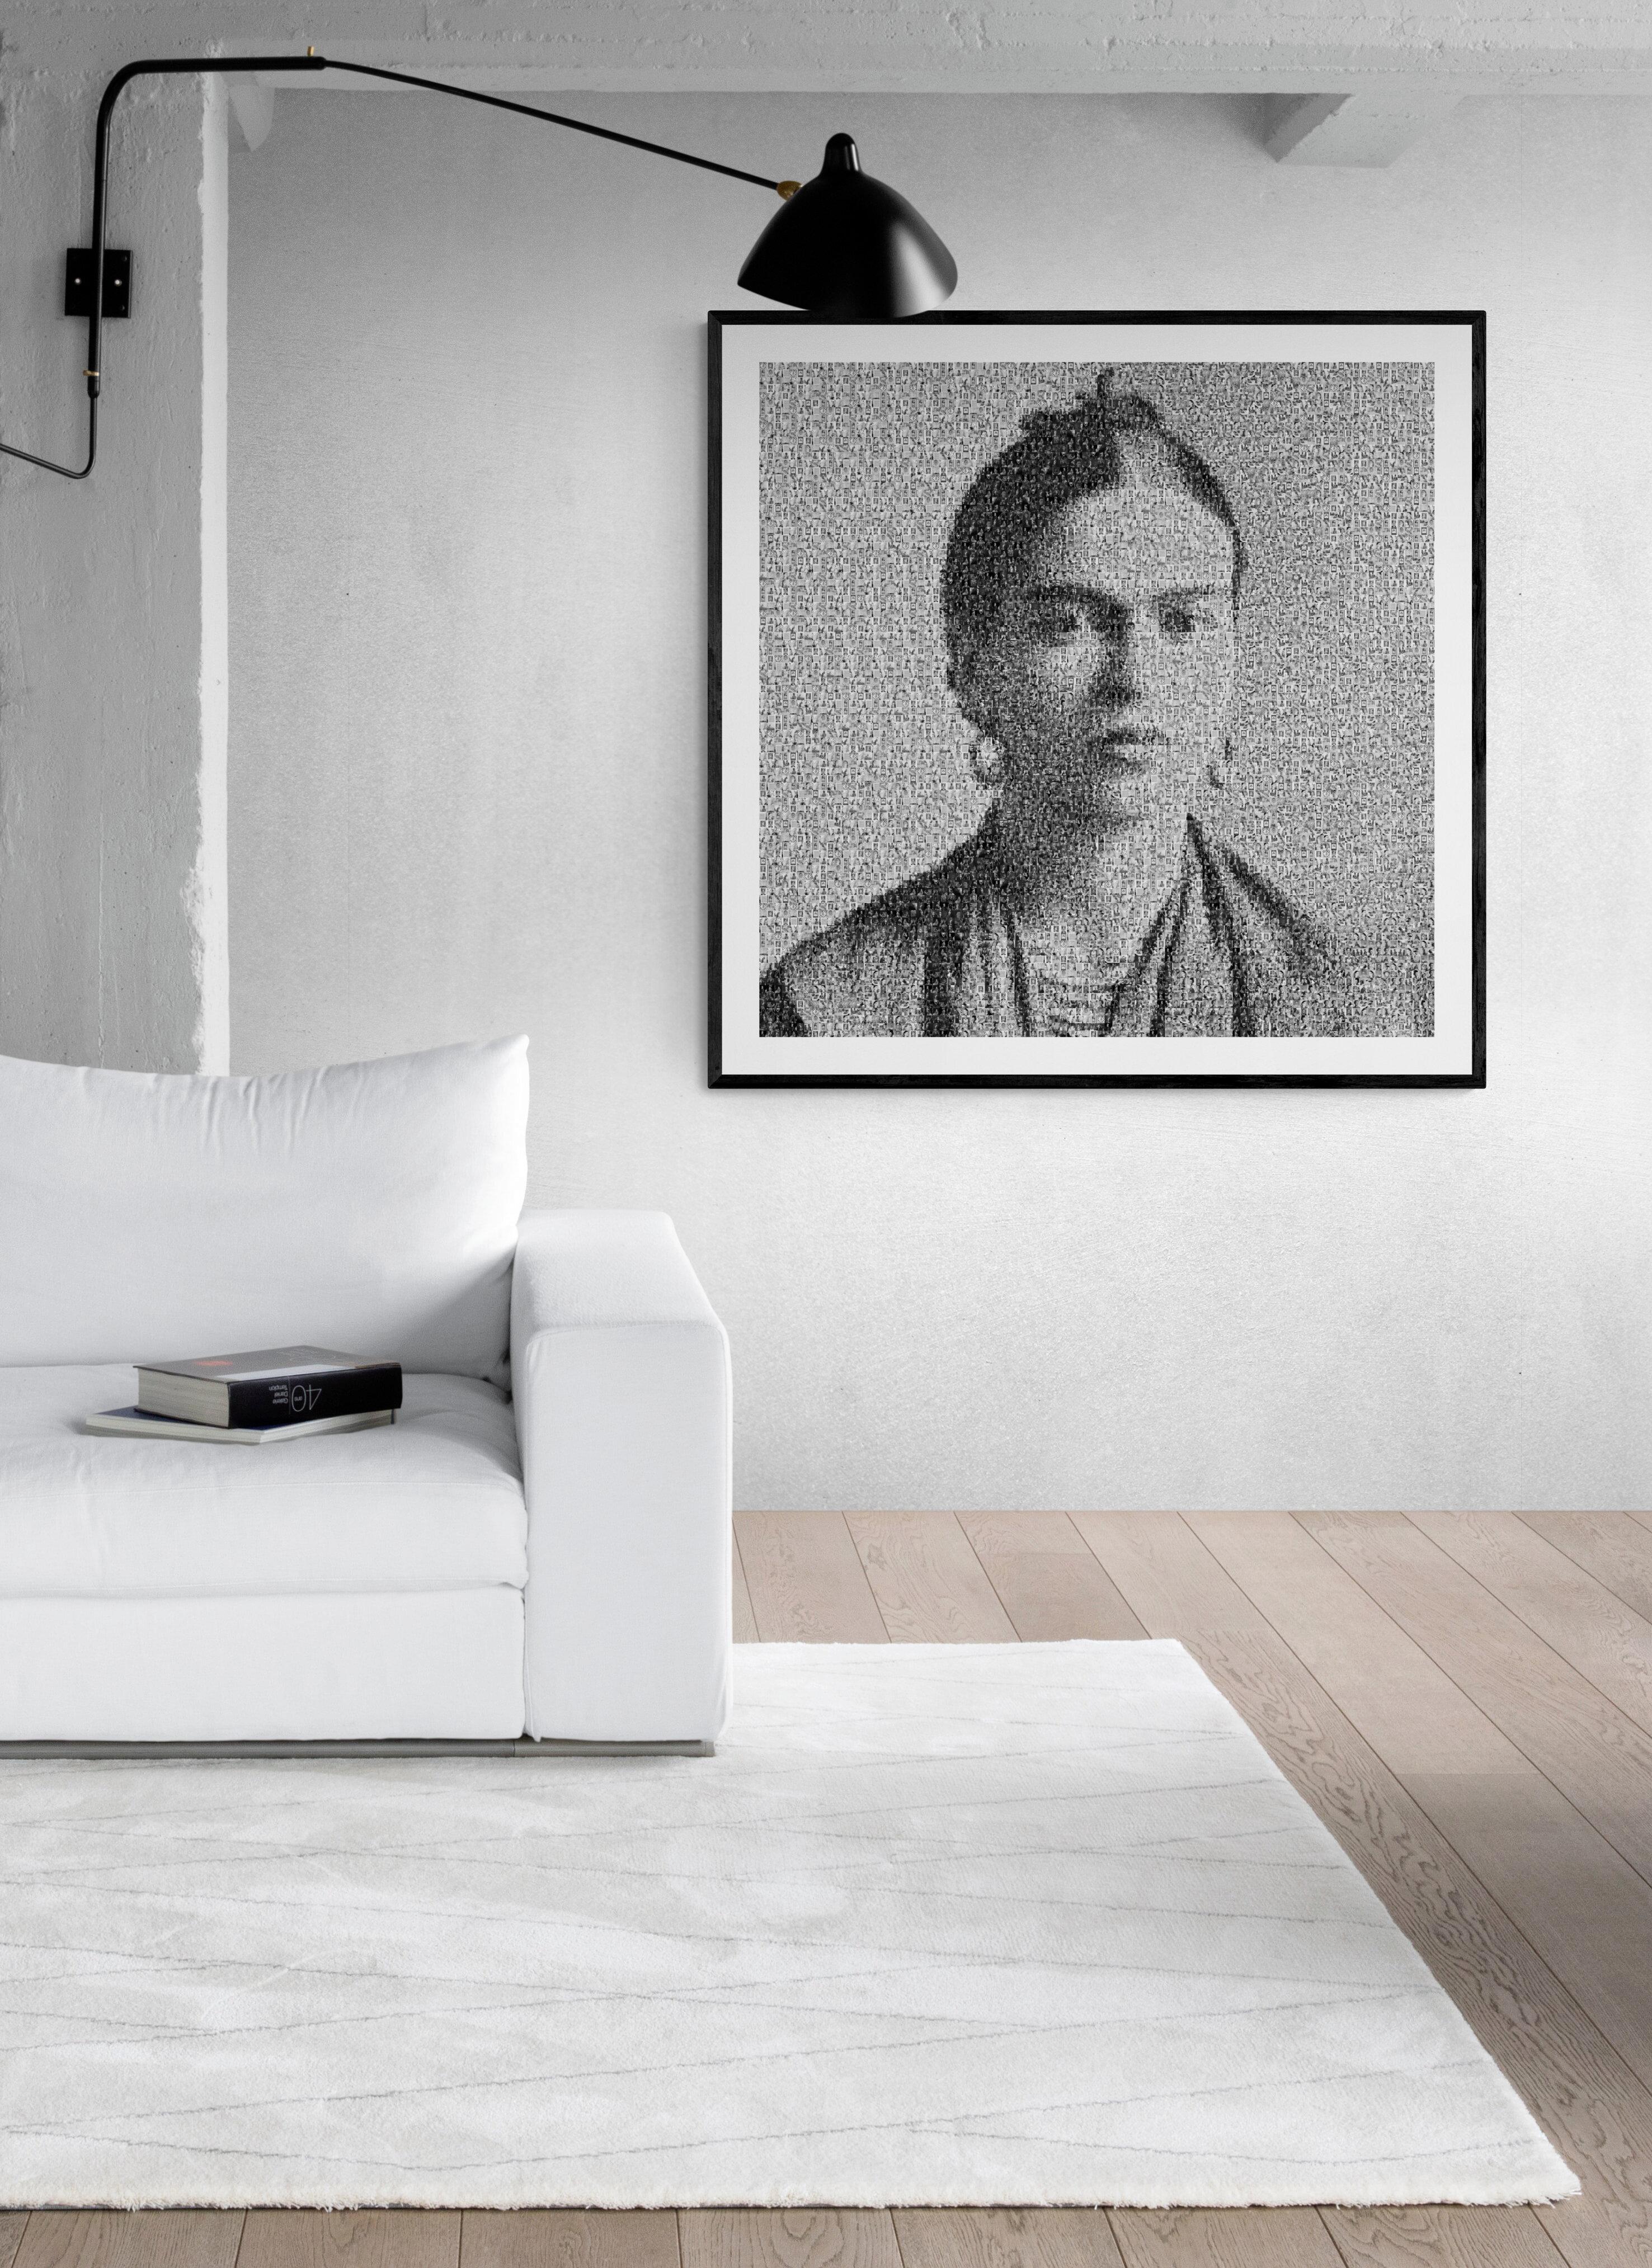 
Frida I+I est une œuvre d'art en photomosaïque réalisée par Destro. La première version d'une série de mosaïques intitulée 